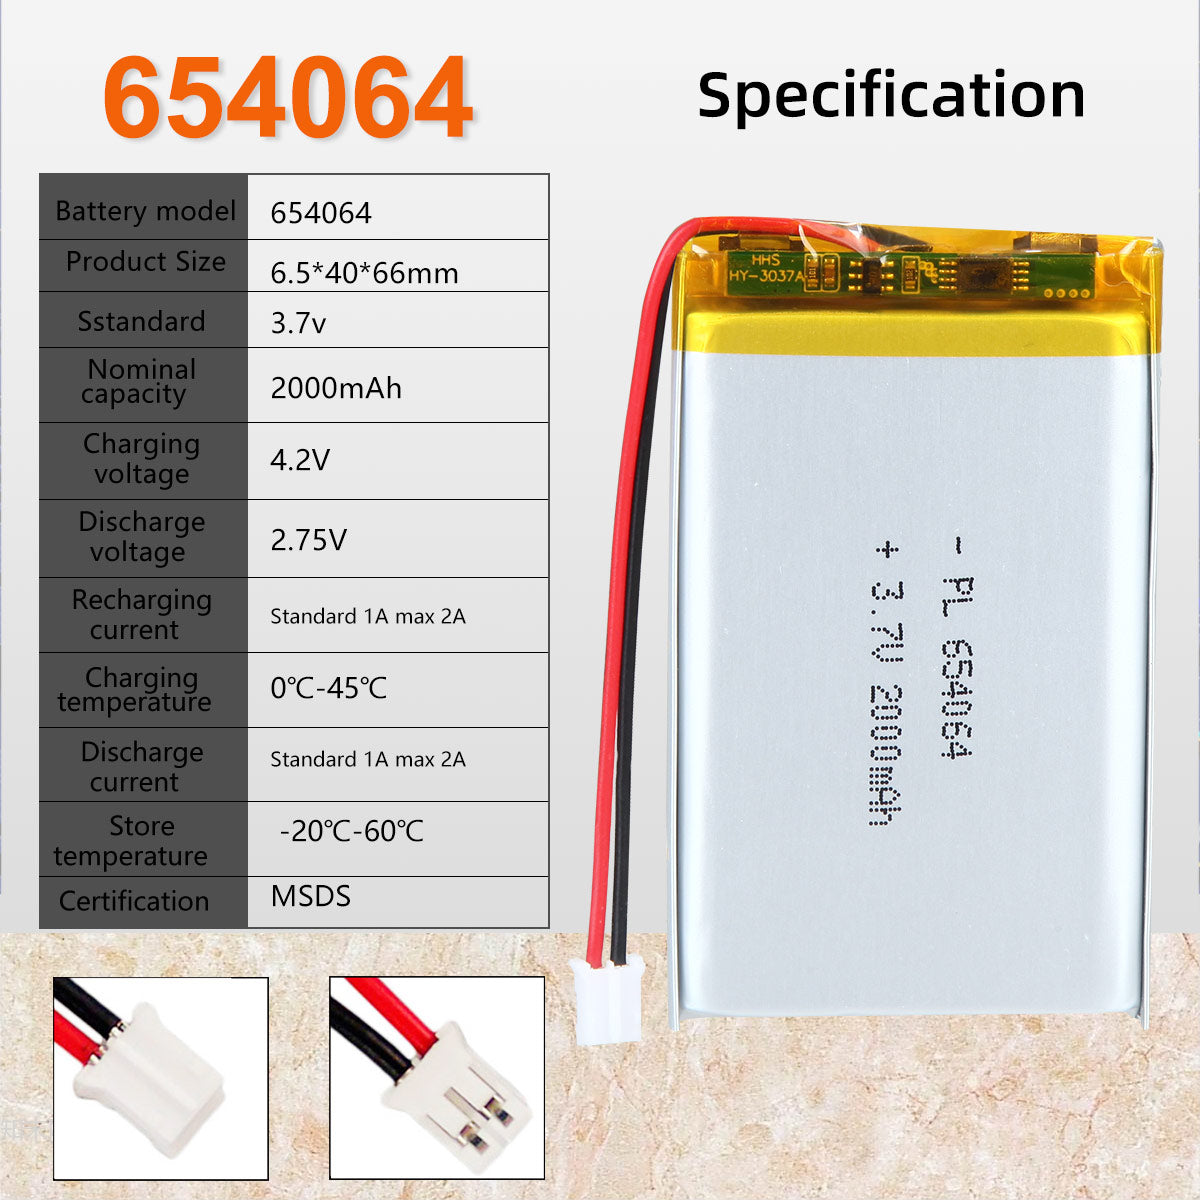 3.7V 2000mAh 654064 Batterie lithium-polymère rechargeable Longueur 66mm